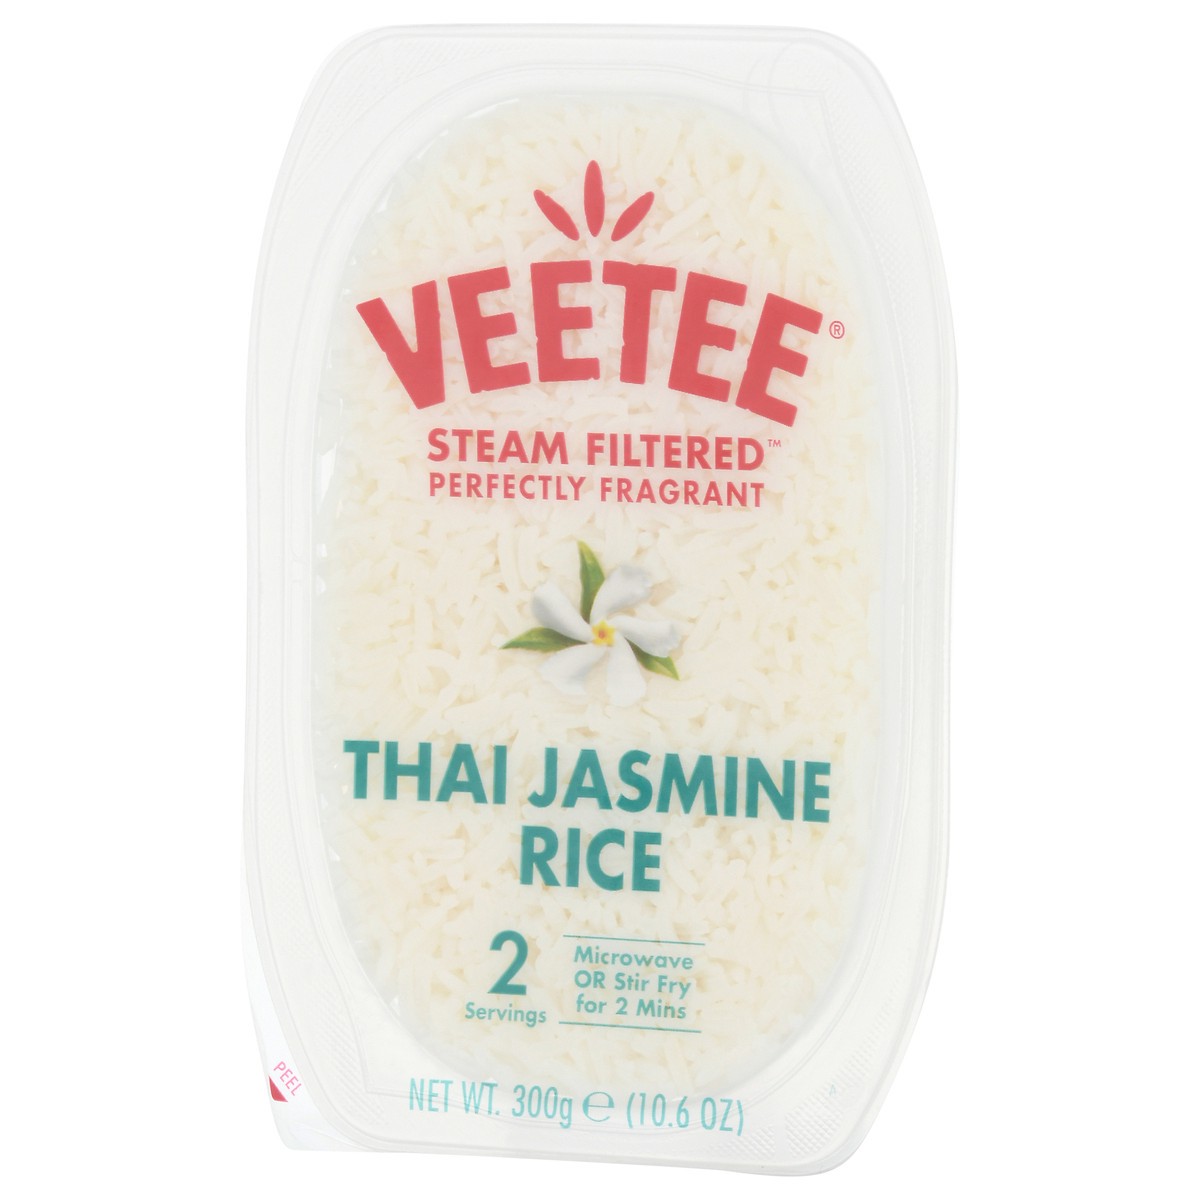 slide 2 of 9, VeeTee Steam Filtered Thai Jasmine Rice 10.6 oz, 10.6 oz